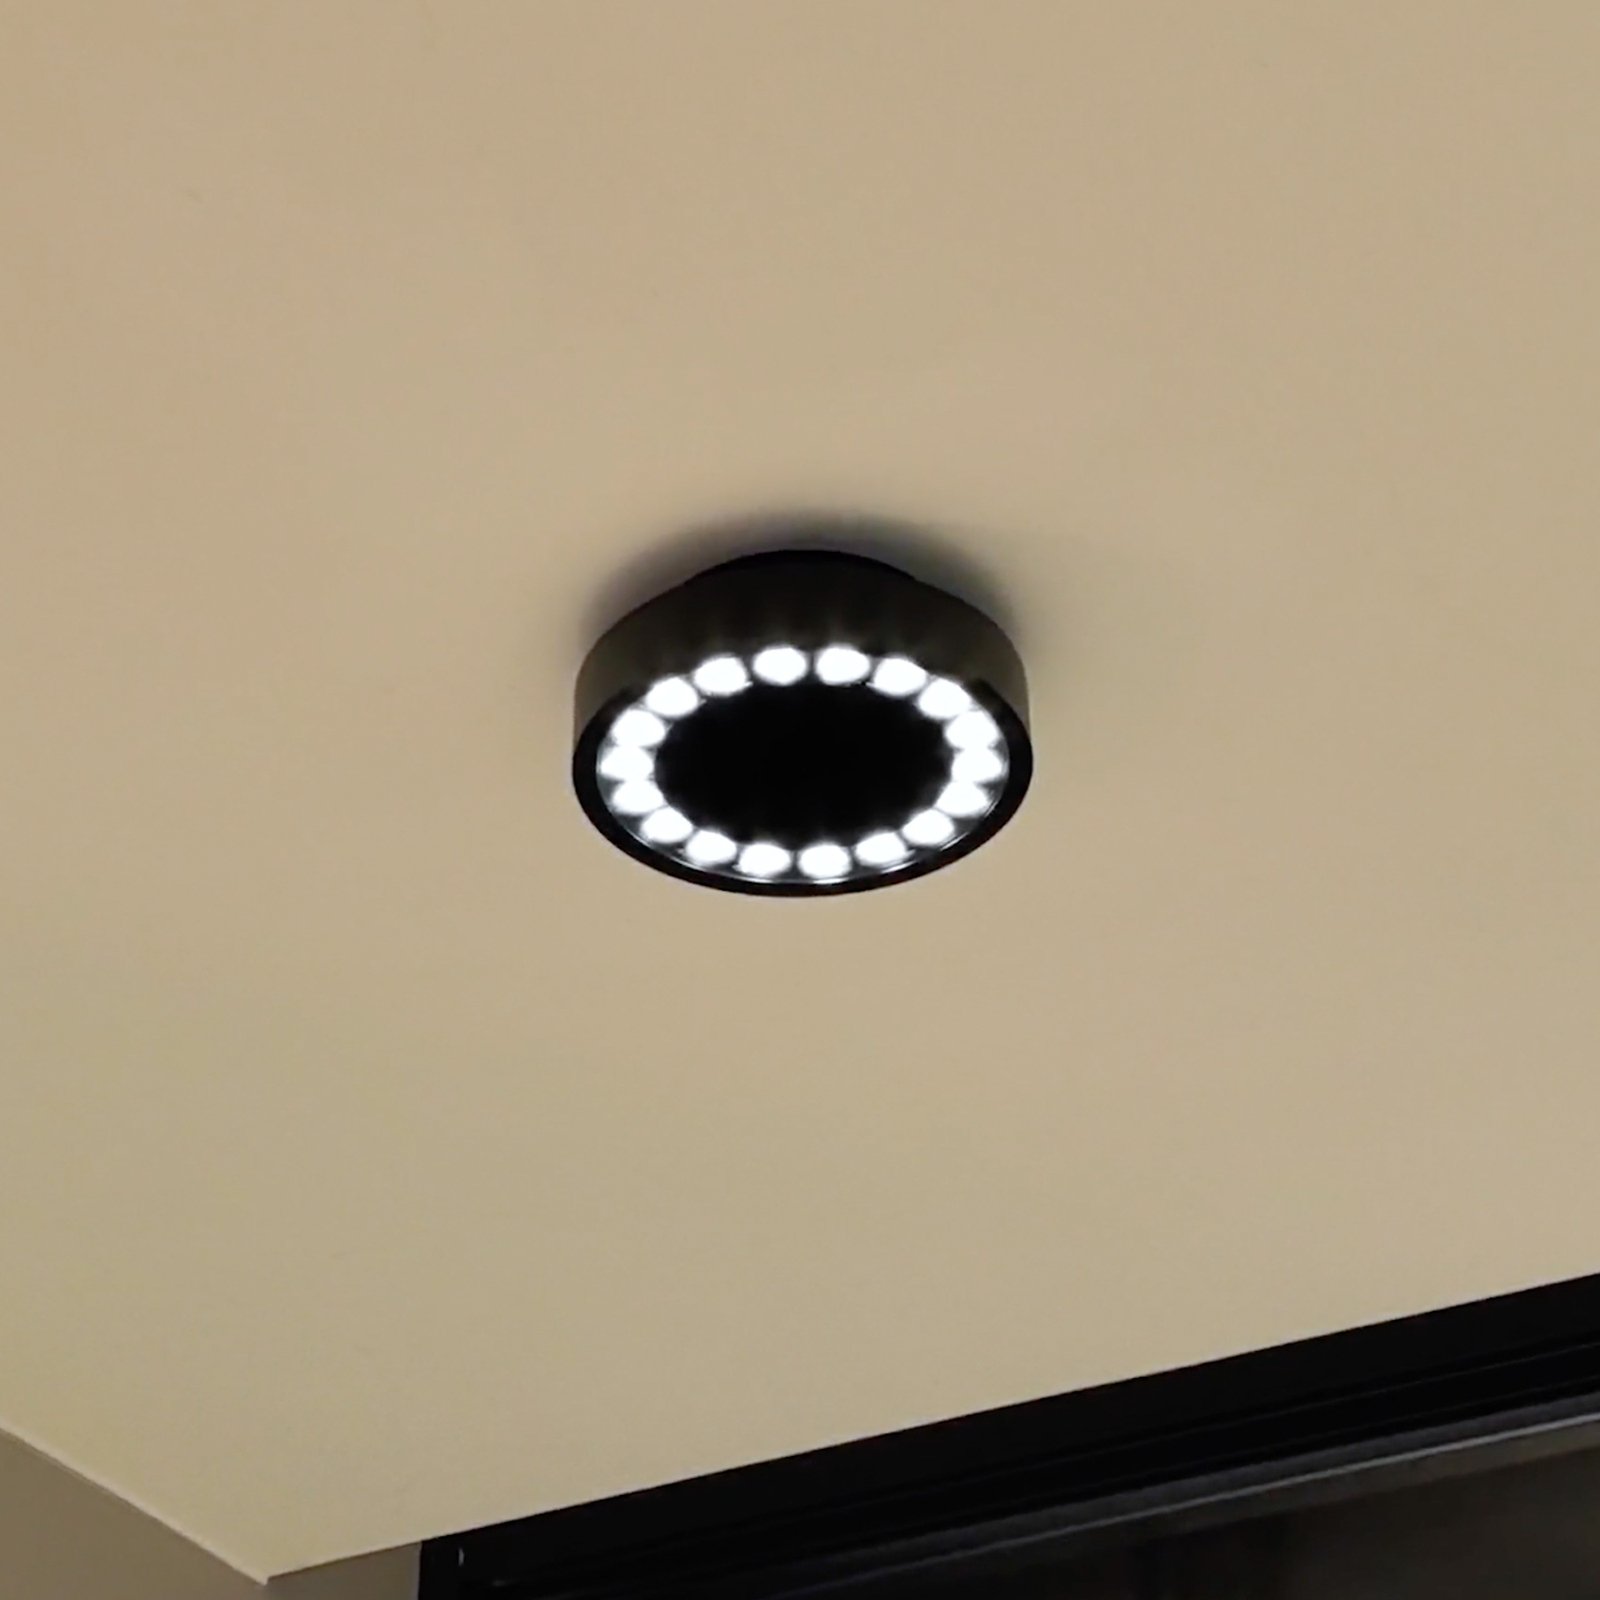 Lucande LED външно осветление за таван Roran, черно, Ø 18 cm, IP65